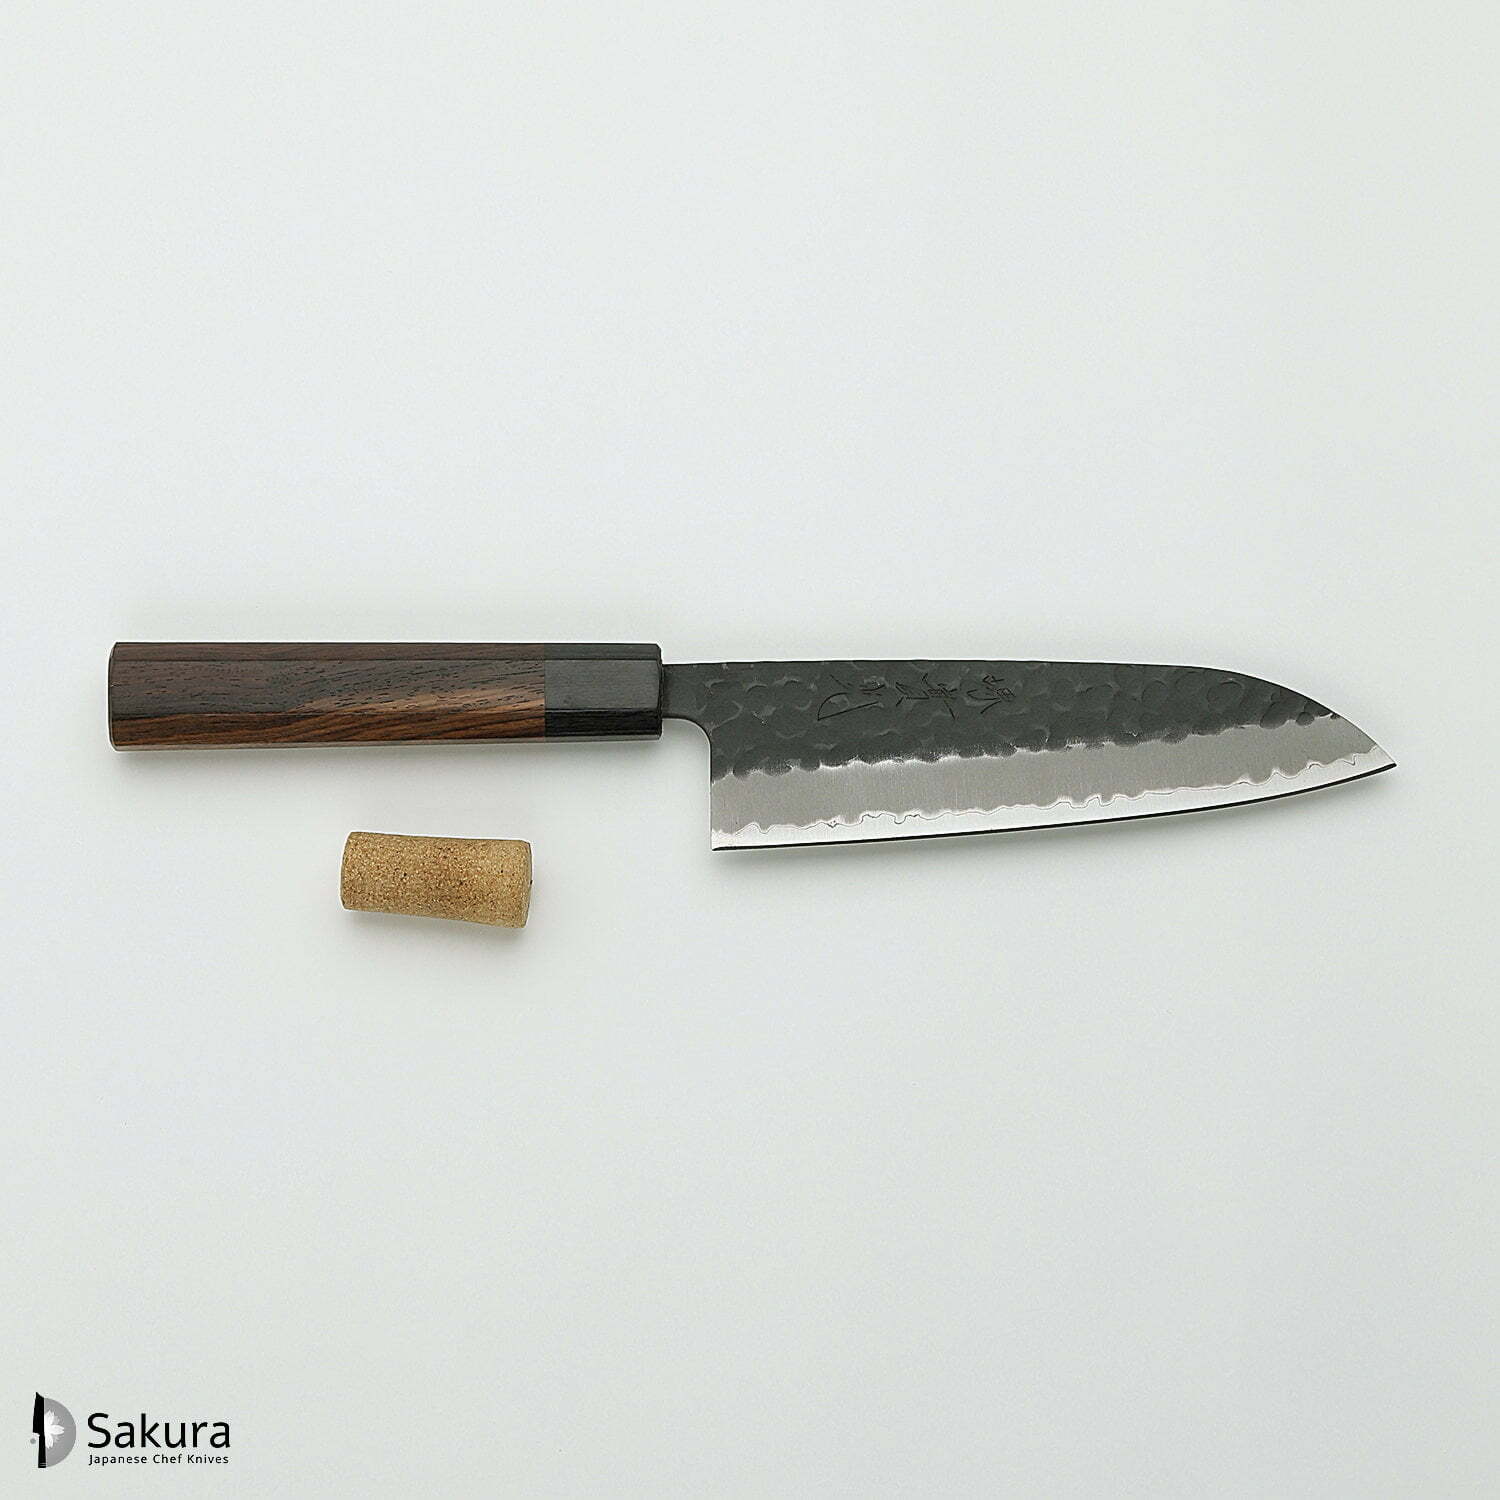 סכין רב-תכליתית סָנטוֹקוּ 165מ״מ מחוזקת 3 שכבות: פלדת פחמן יפנית מתקדמת מסוג Aogami Super עטופה פלדת אל-חלד גימור קורואיצ׳י שחור עם ריקוע פטיש ג׳יקו סאקאיי יפן